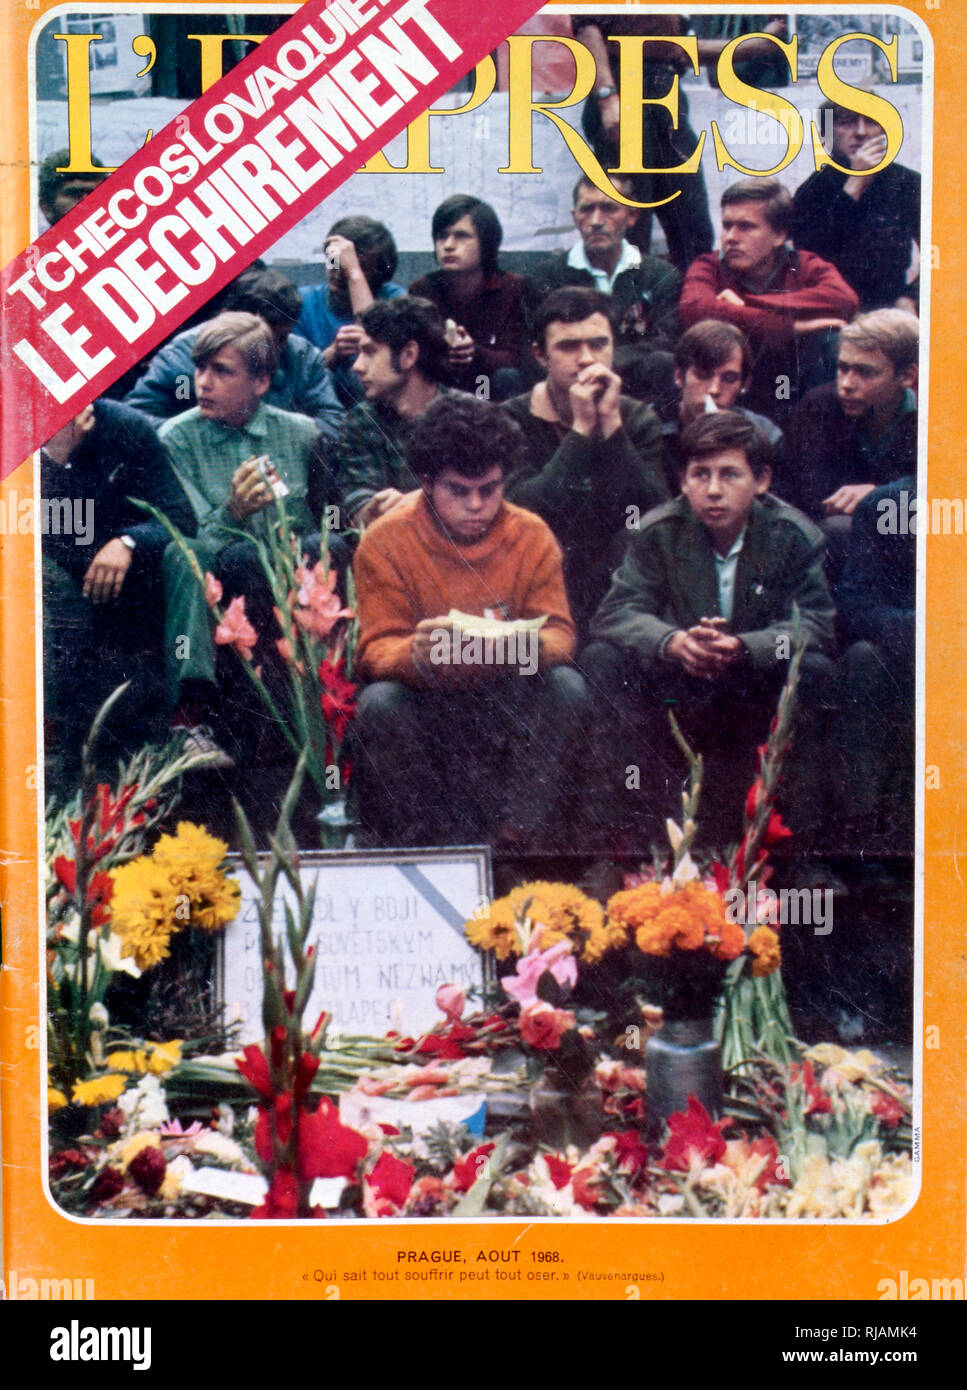 Couverture de 'L'Express' un magazine français montrant des manifestants à Prague, juste avant l'invasion soviétique de Russie août 1968. L'invasion de la Tchécoslovaquie du Pacte de Varsovie, officiellement connu sous le nom d'opération Danube, était une invasion de la Tchécoslovaquie par cinq pays du Pacte de Varsovie dans la nuit du 20-21 août 1968. L'invasion a arrêté Alexander Dubcek, réformes de libéralisation du Printemps de Prague Banque D'Images